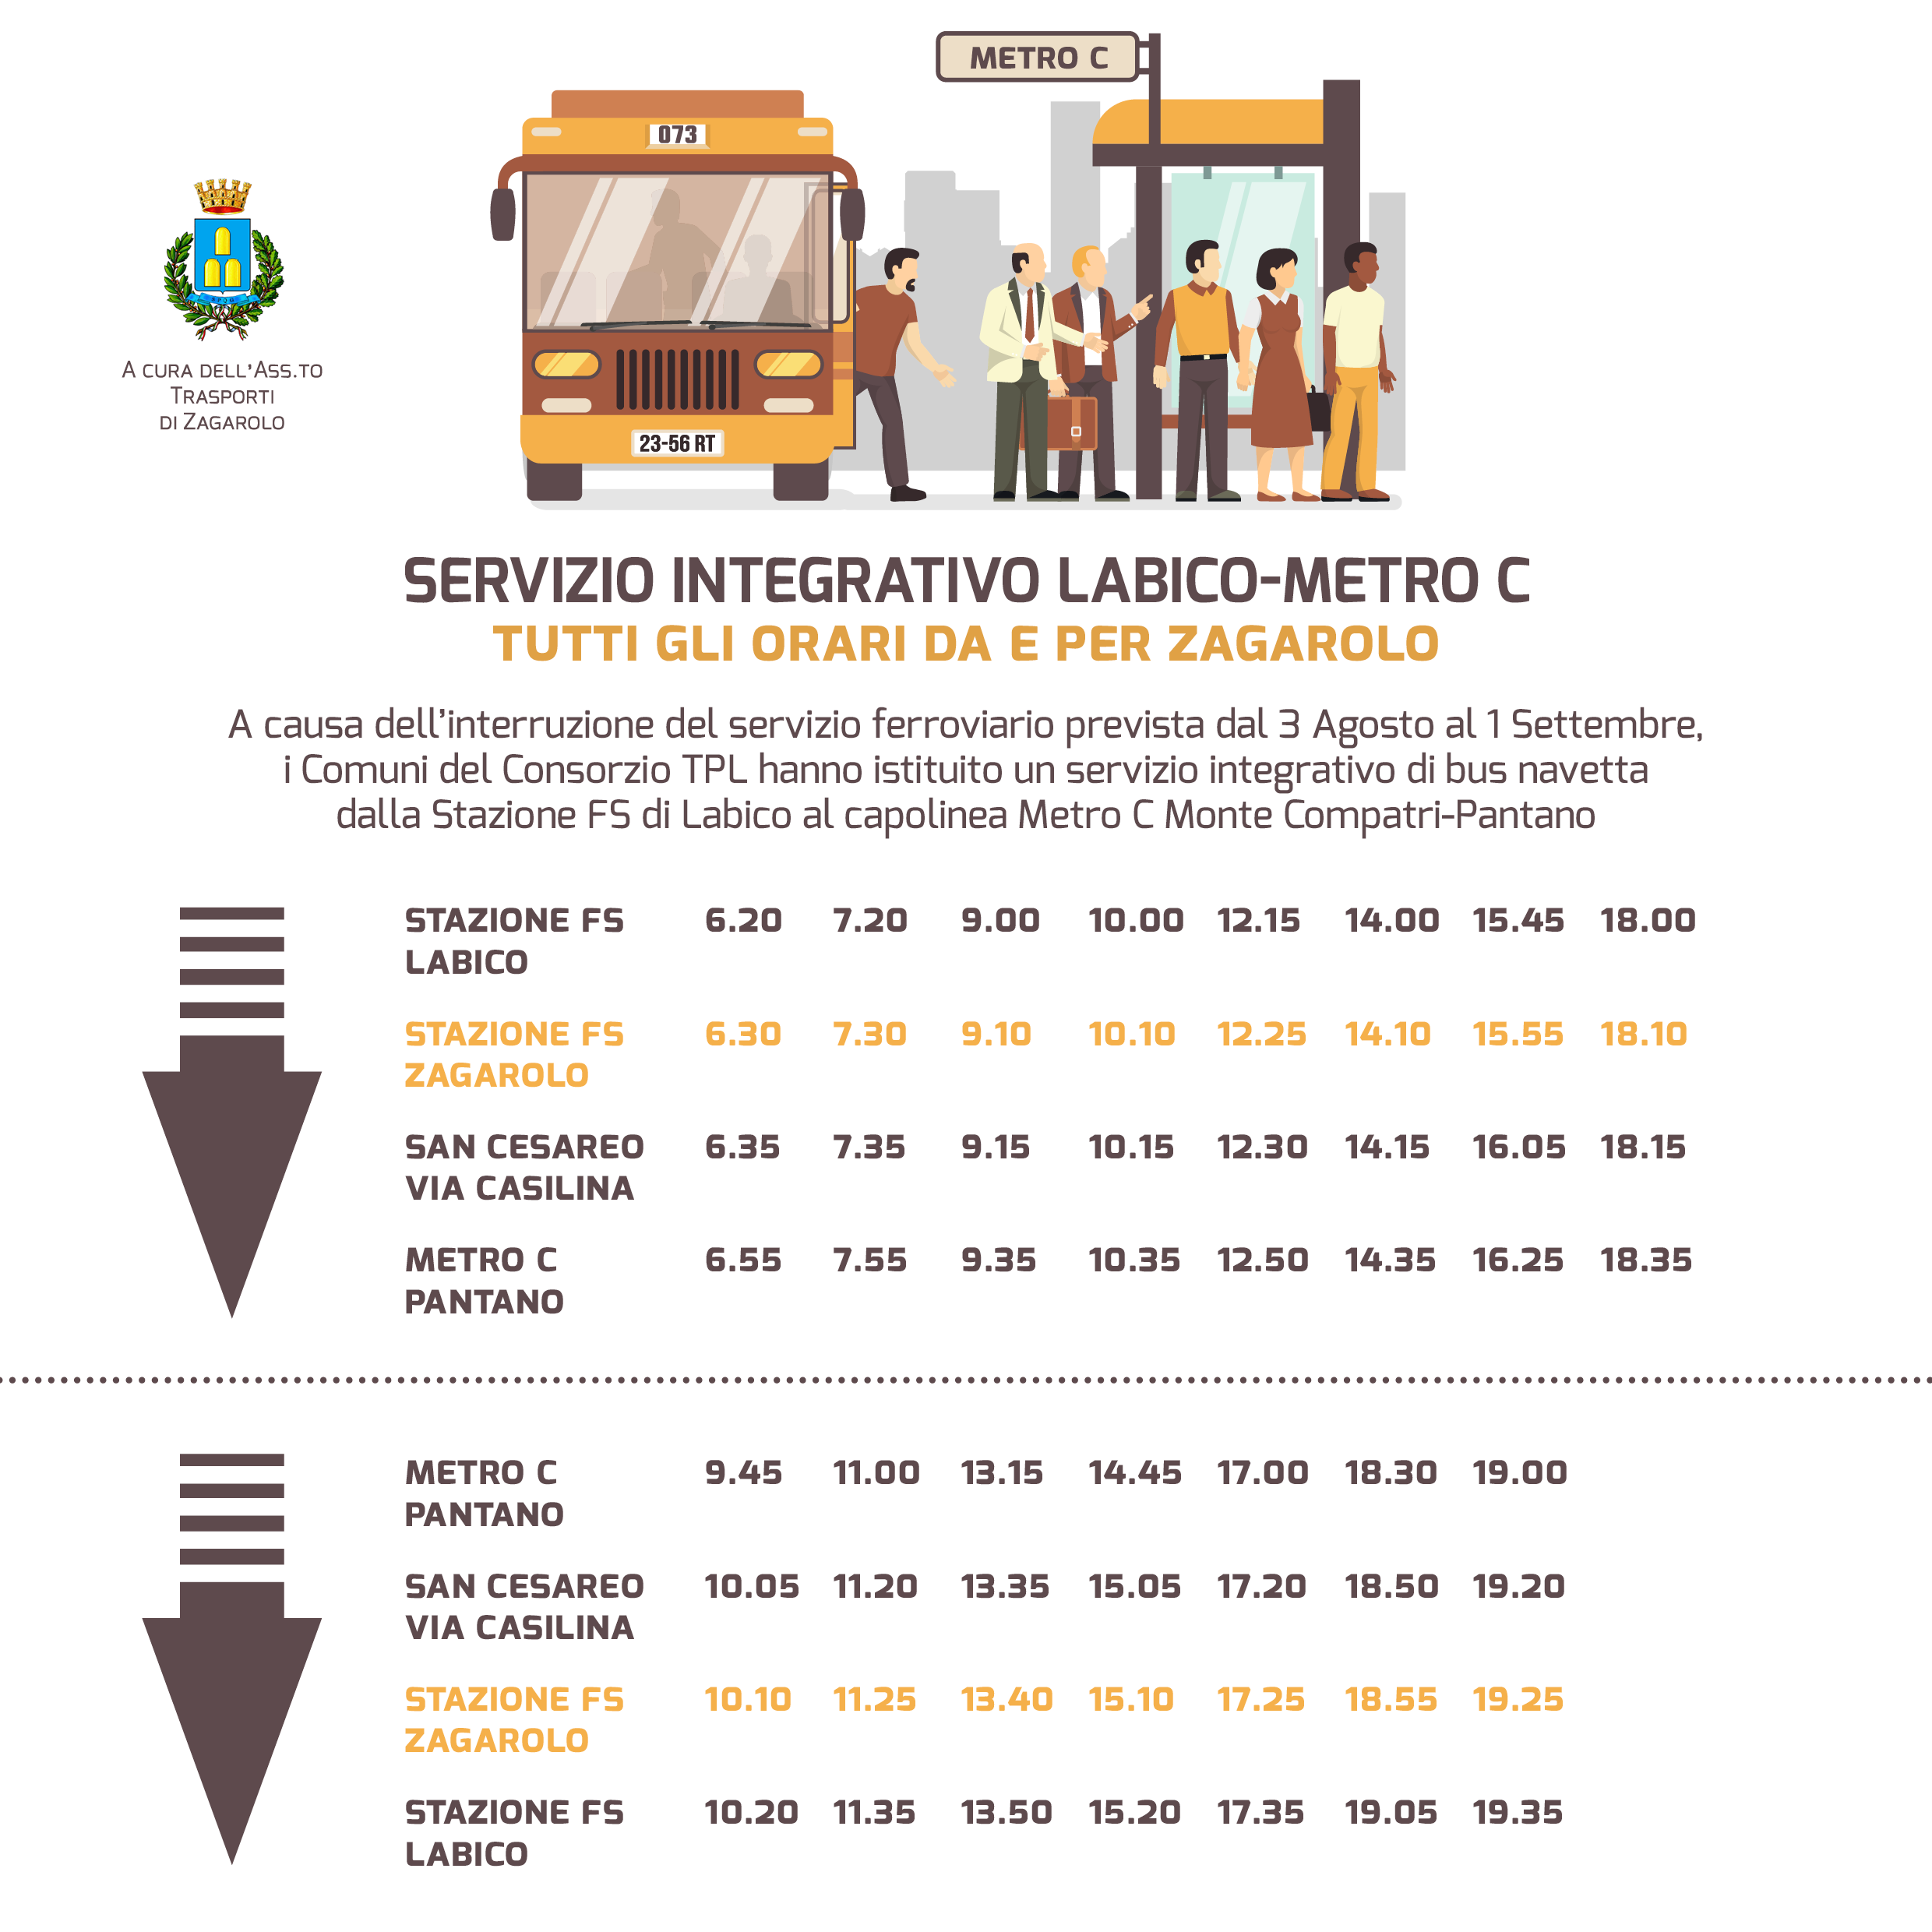 Servizio integrativo bus navetta dalla Stazione FS Labico alle Metro C Monte Compatri-Pantano, passando per Zagarolo